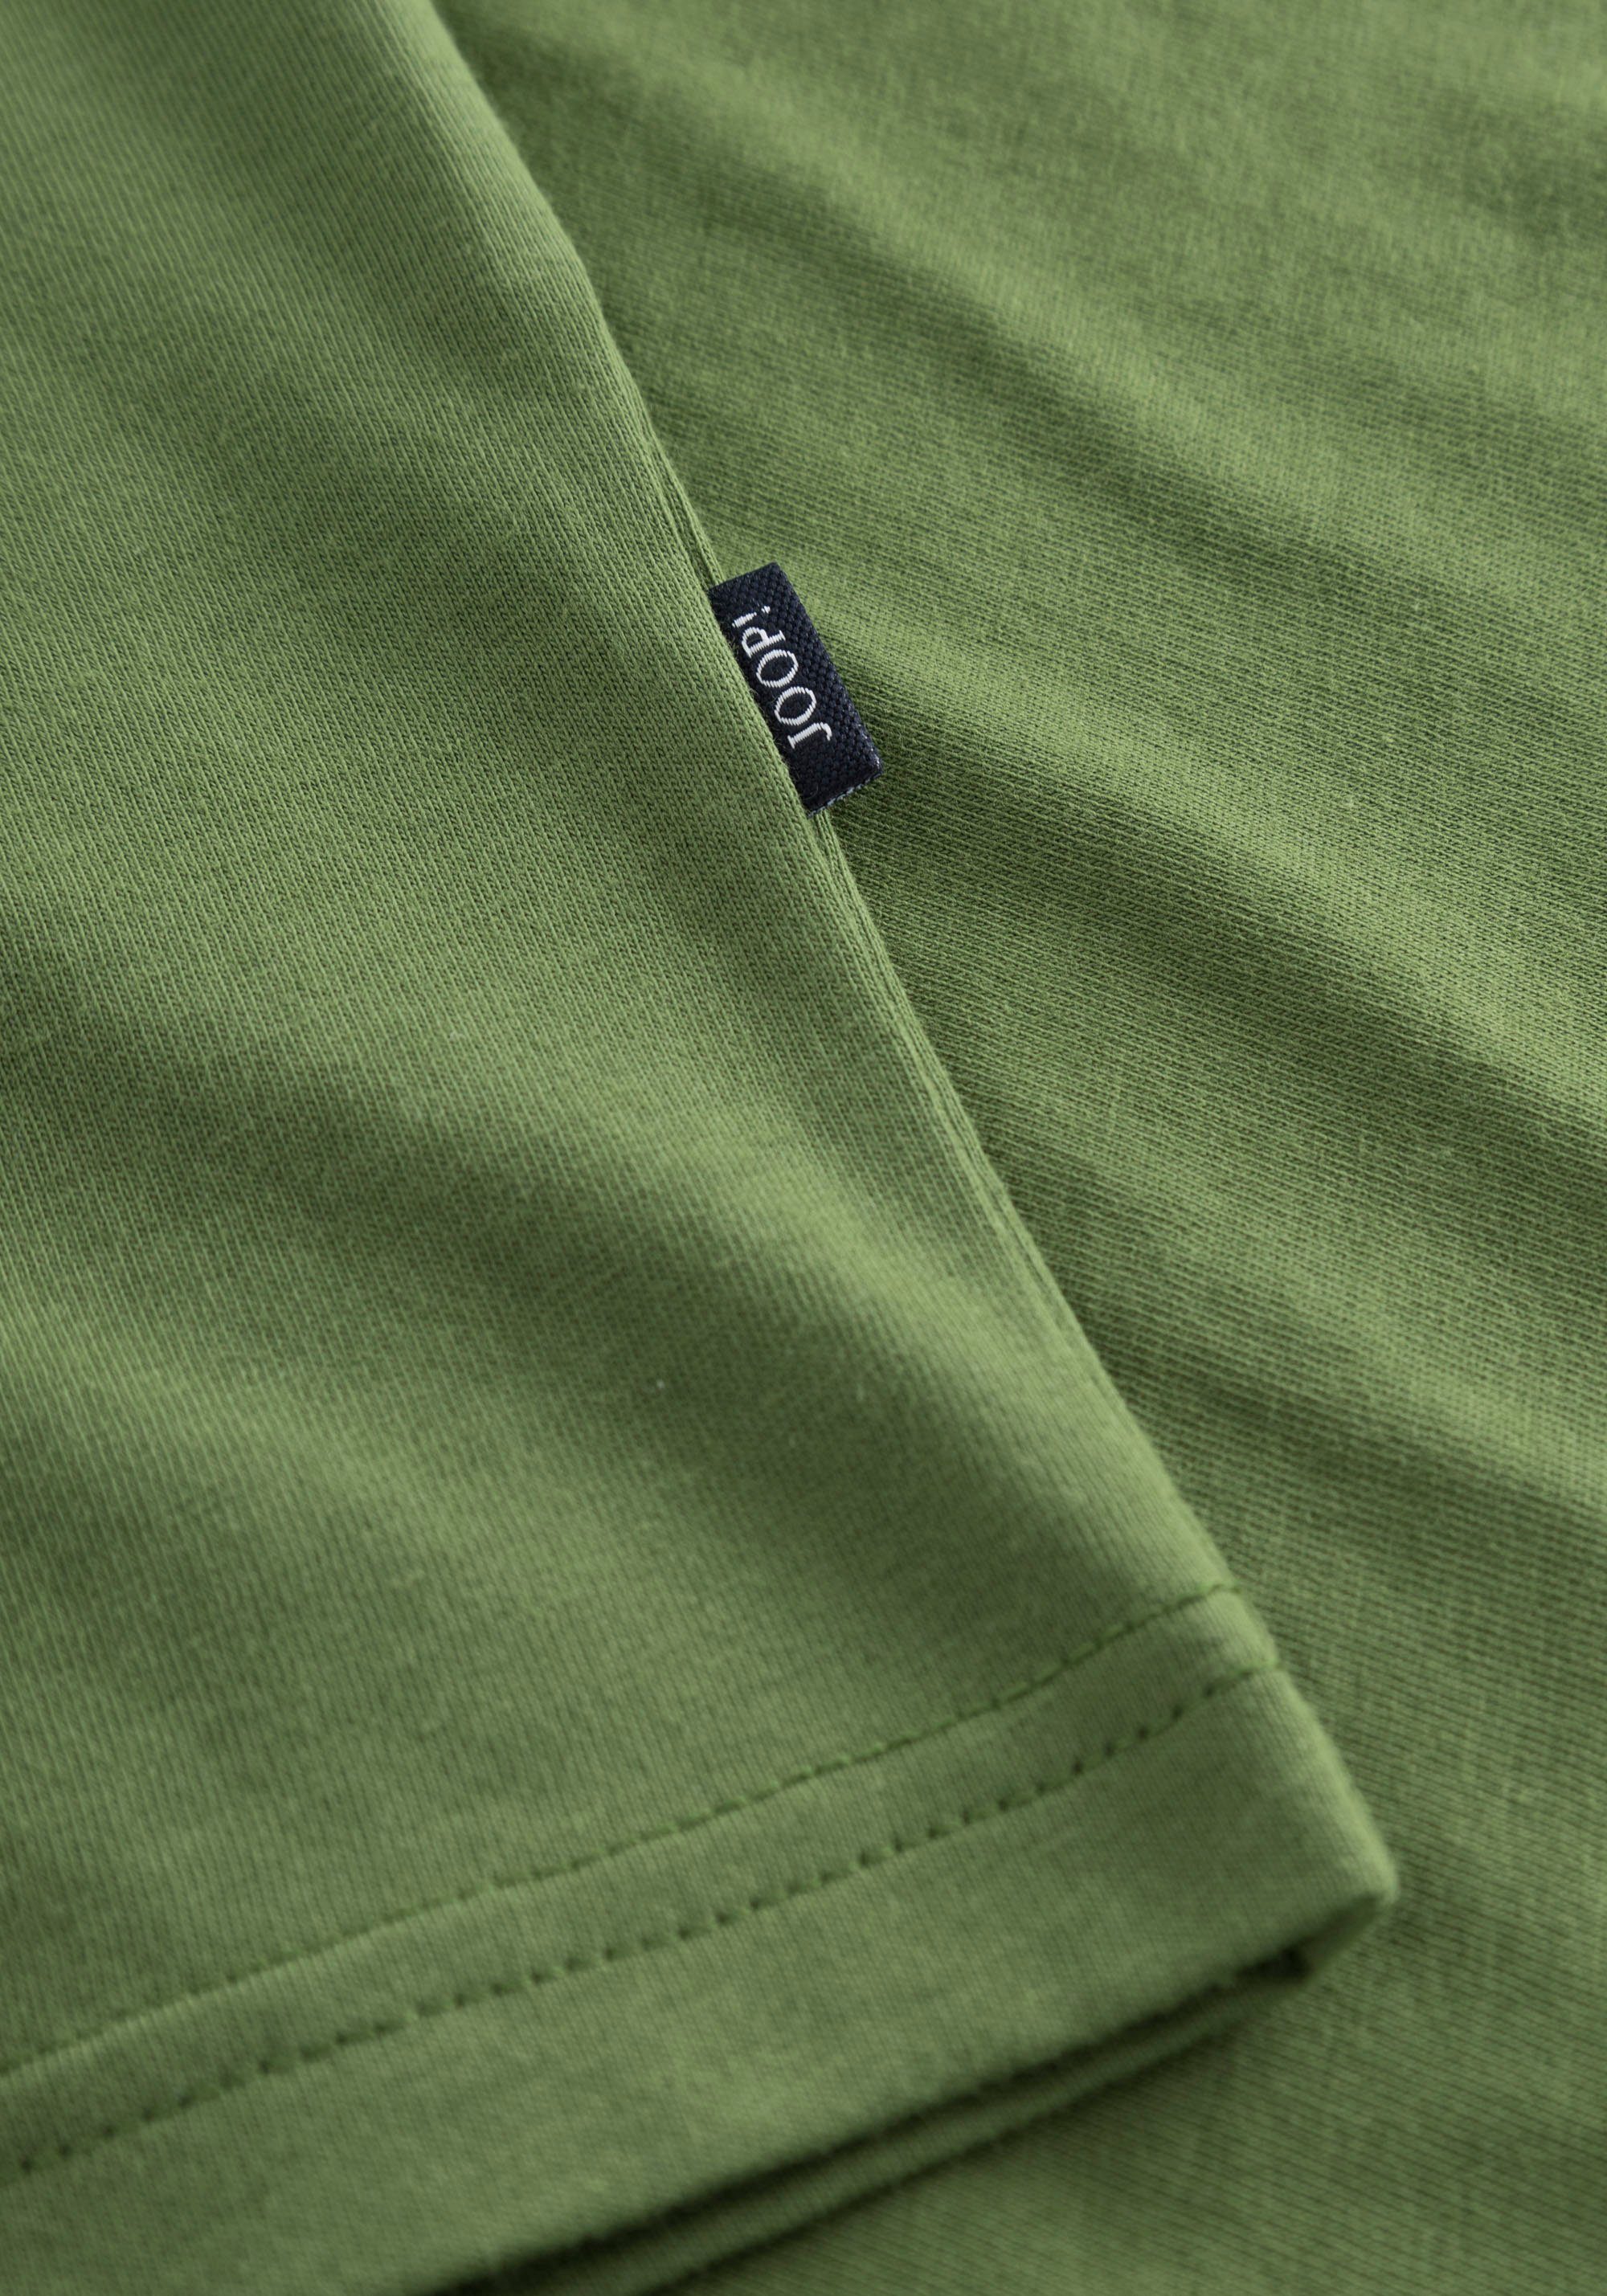 Rundhalsshirt JJJ-09Alex Logo-Frontprint Green mit Bright Jeans Joop